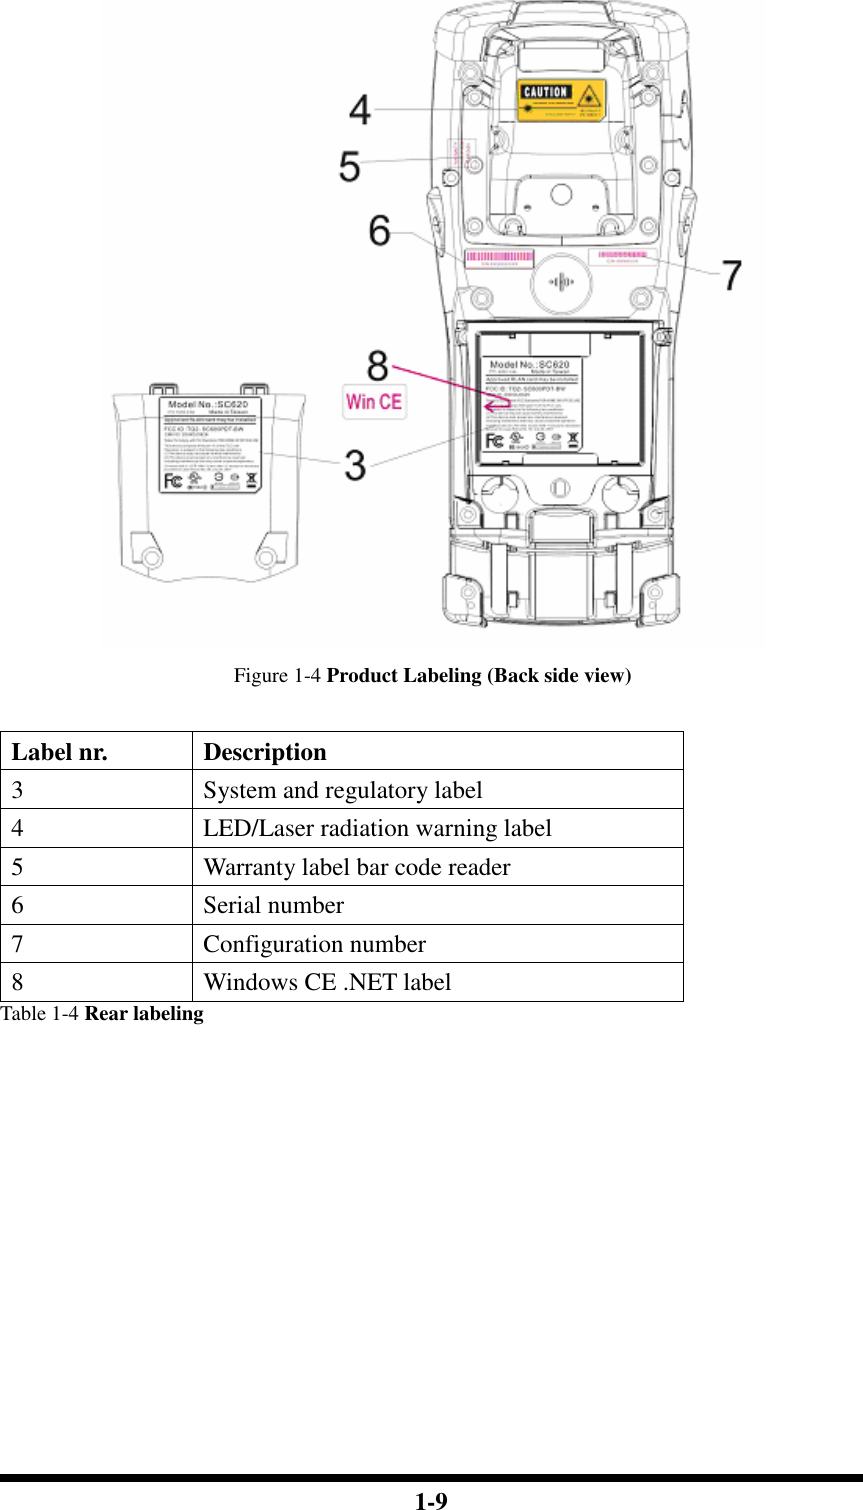  1-9  Figure 1-4 Product Labeling (Back side view)  Label nr.  Description 3  System and regulatory label 4  LED/Laser radiation warning label 5  Warranty label bar code reader 6  Serial number 7  Configuration number 8  Windows CE .NET label Table 1-4 Rear labeling            